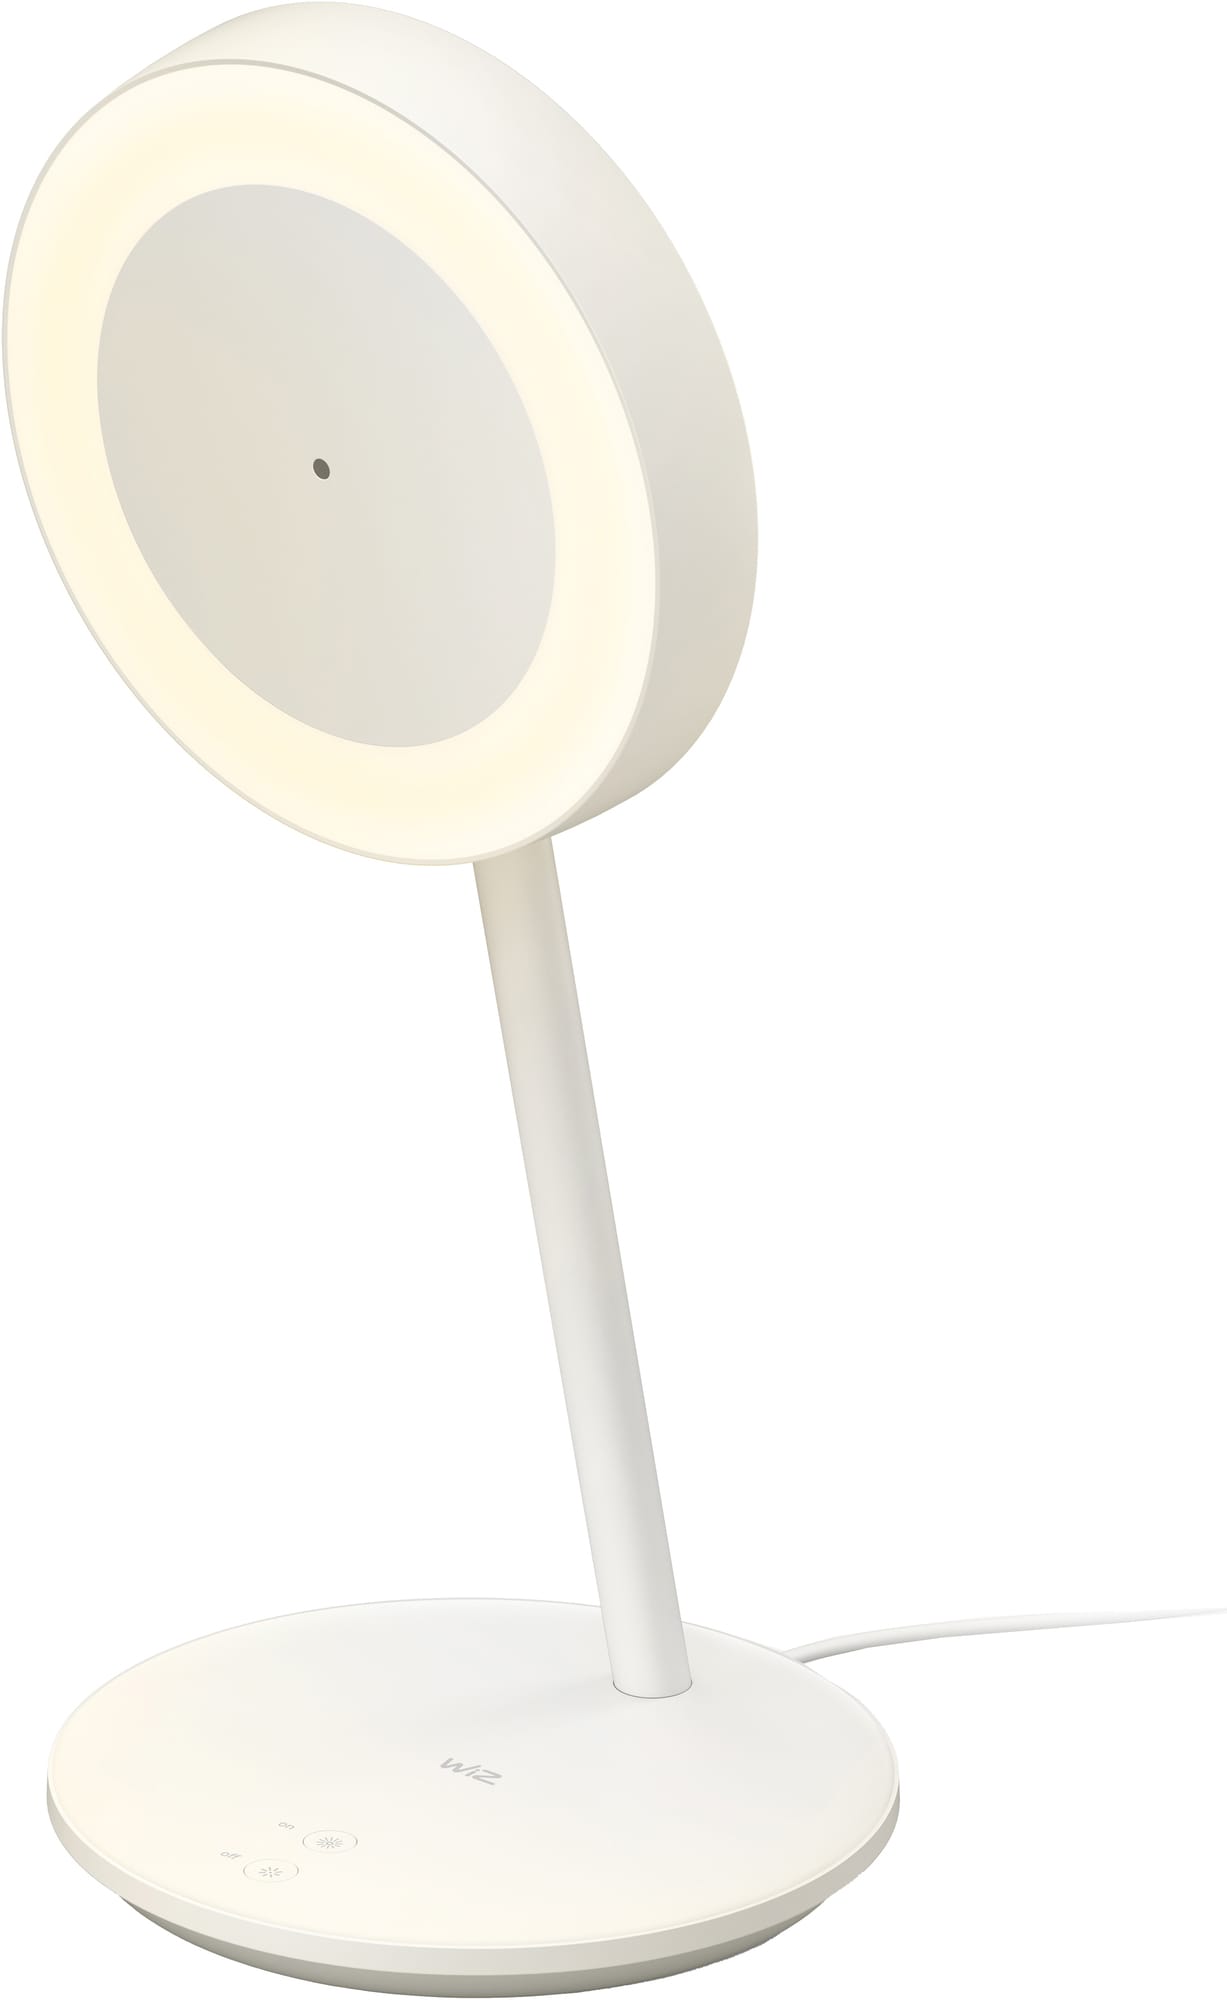 4: WiZ Wi-Fi BLE WFH Lamp Type C